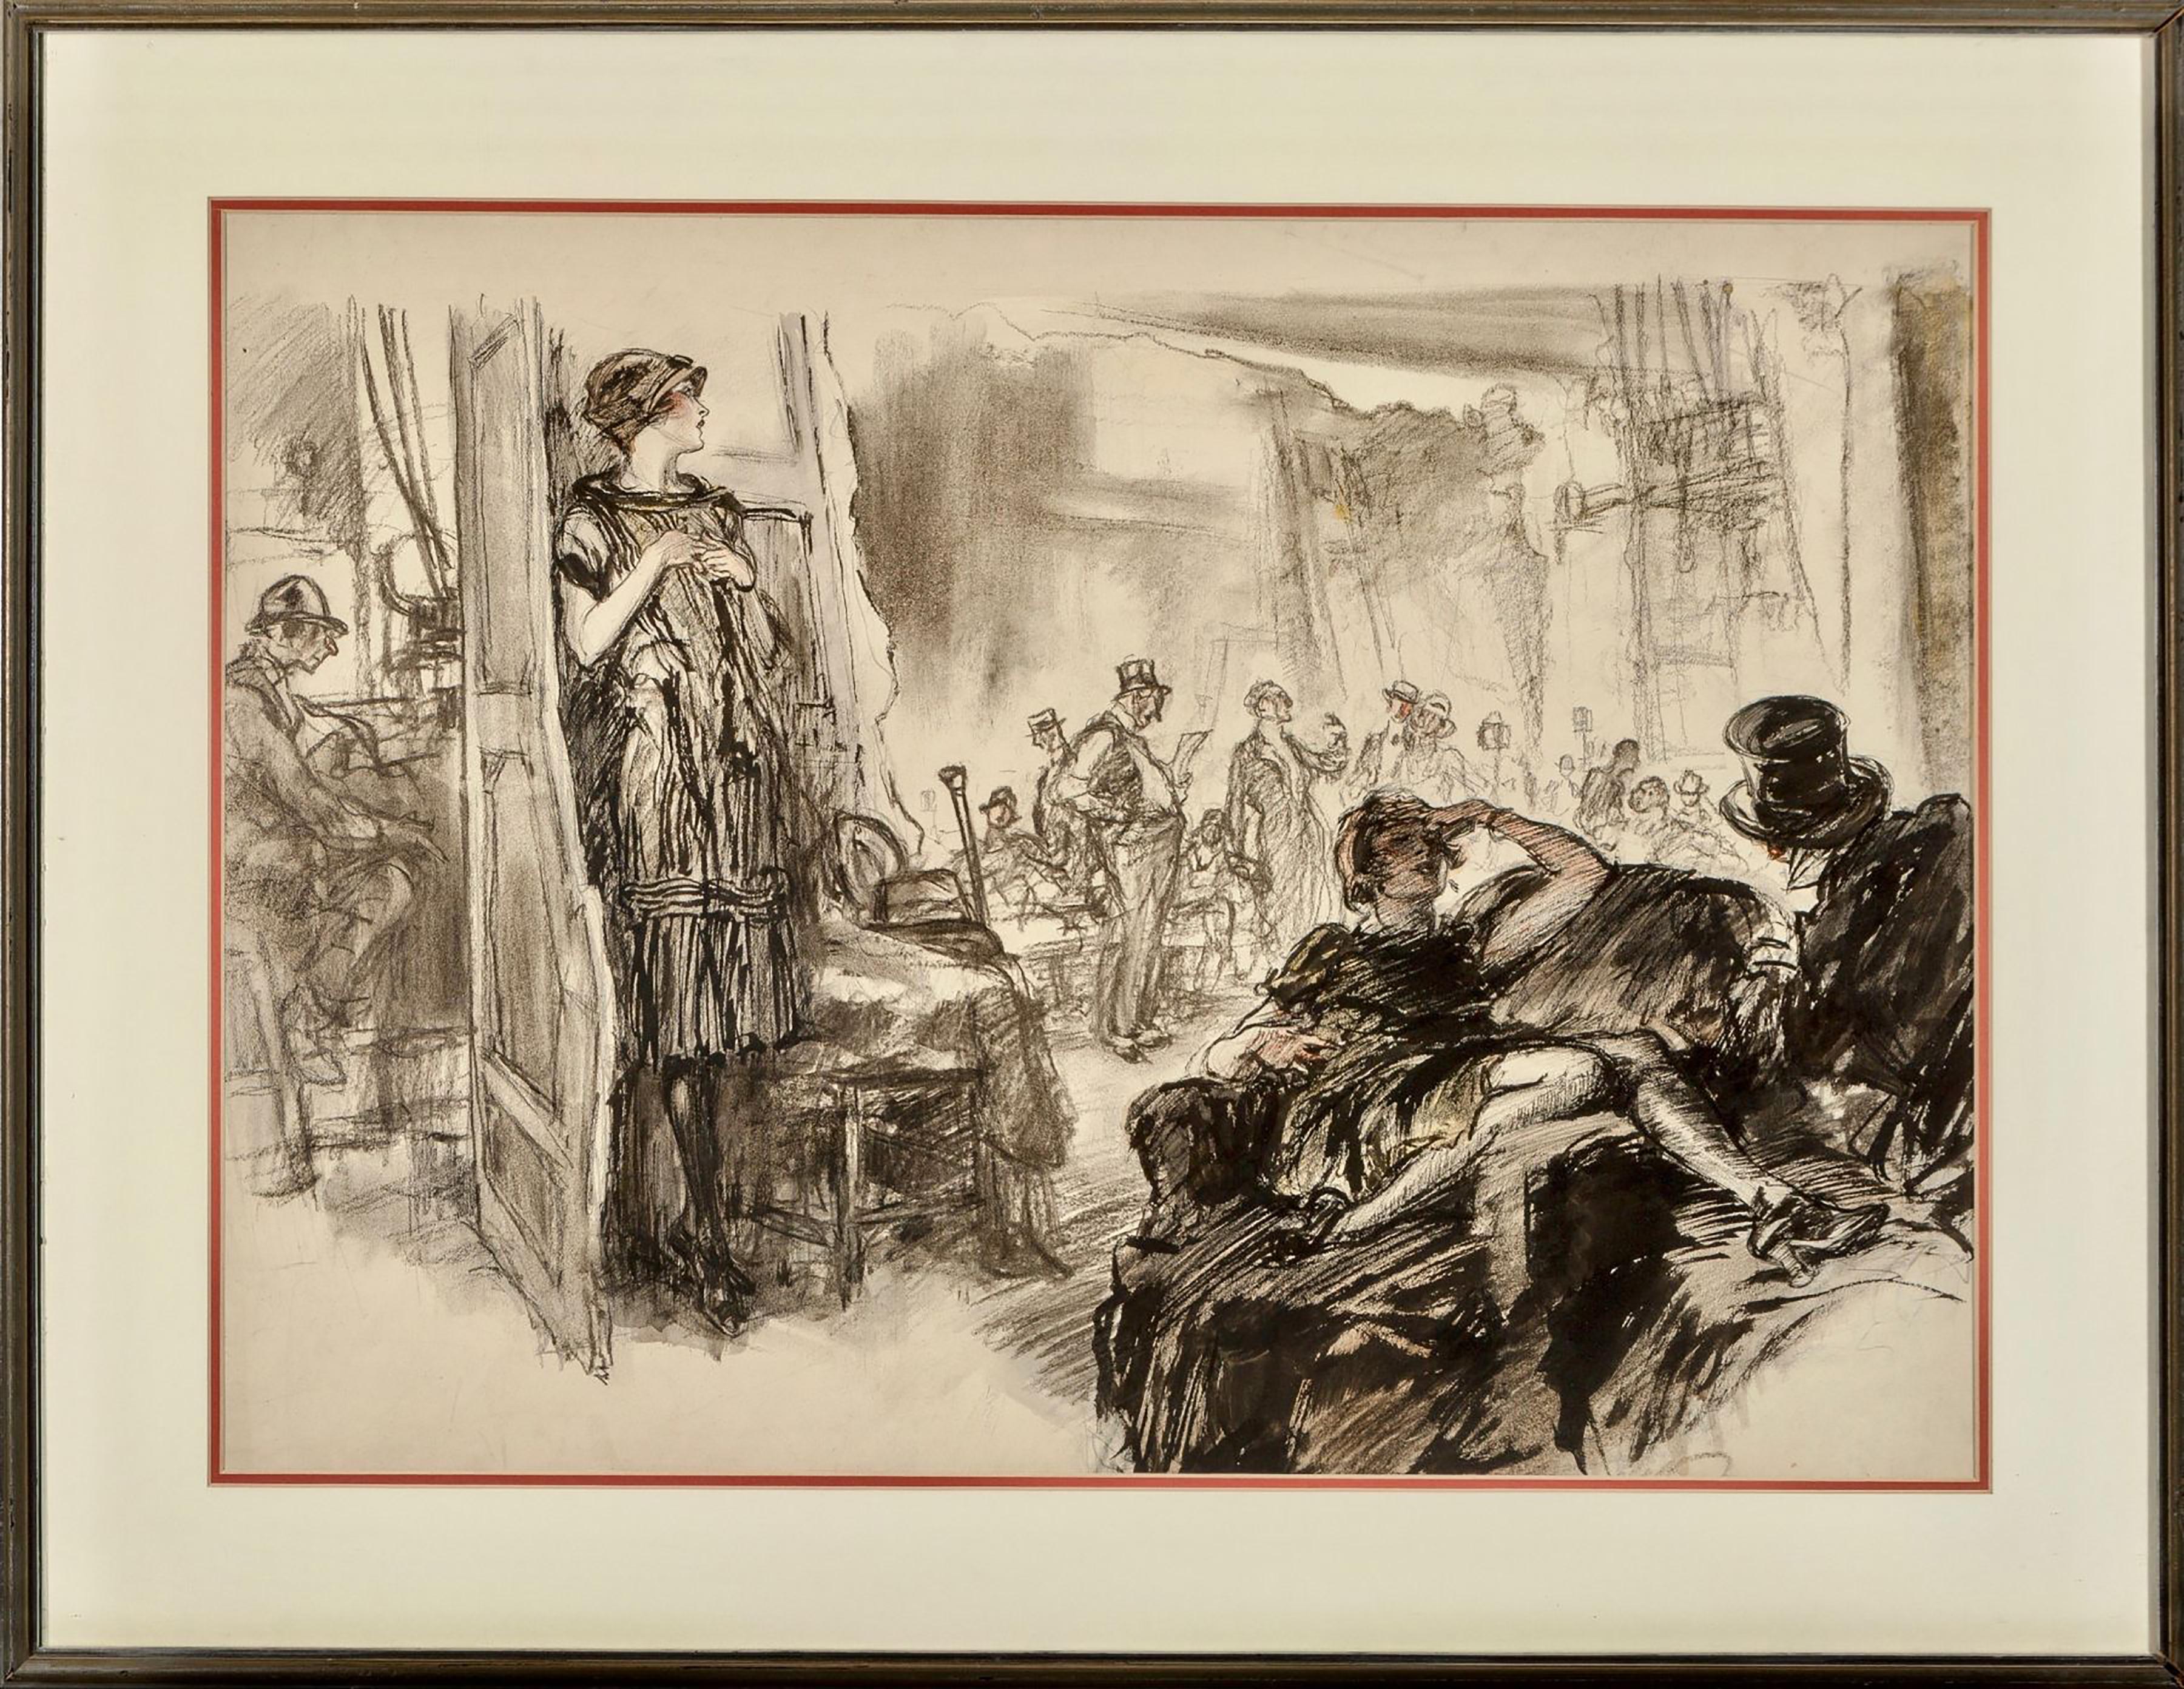 Auktionsraum: Auktion – Art von Henry Raleigh